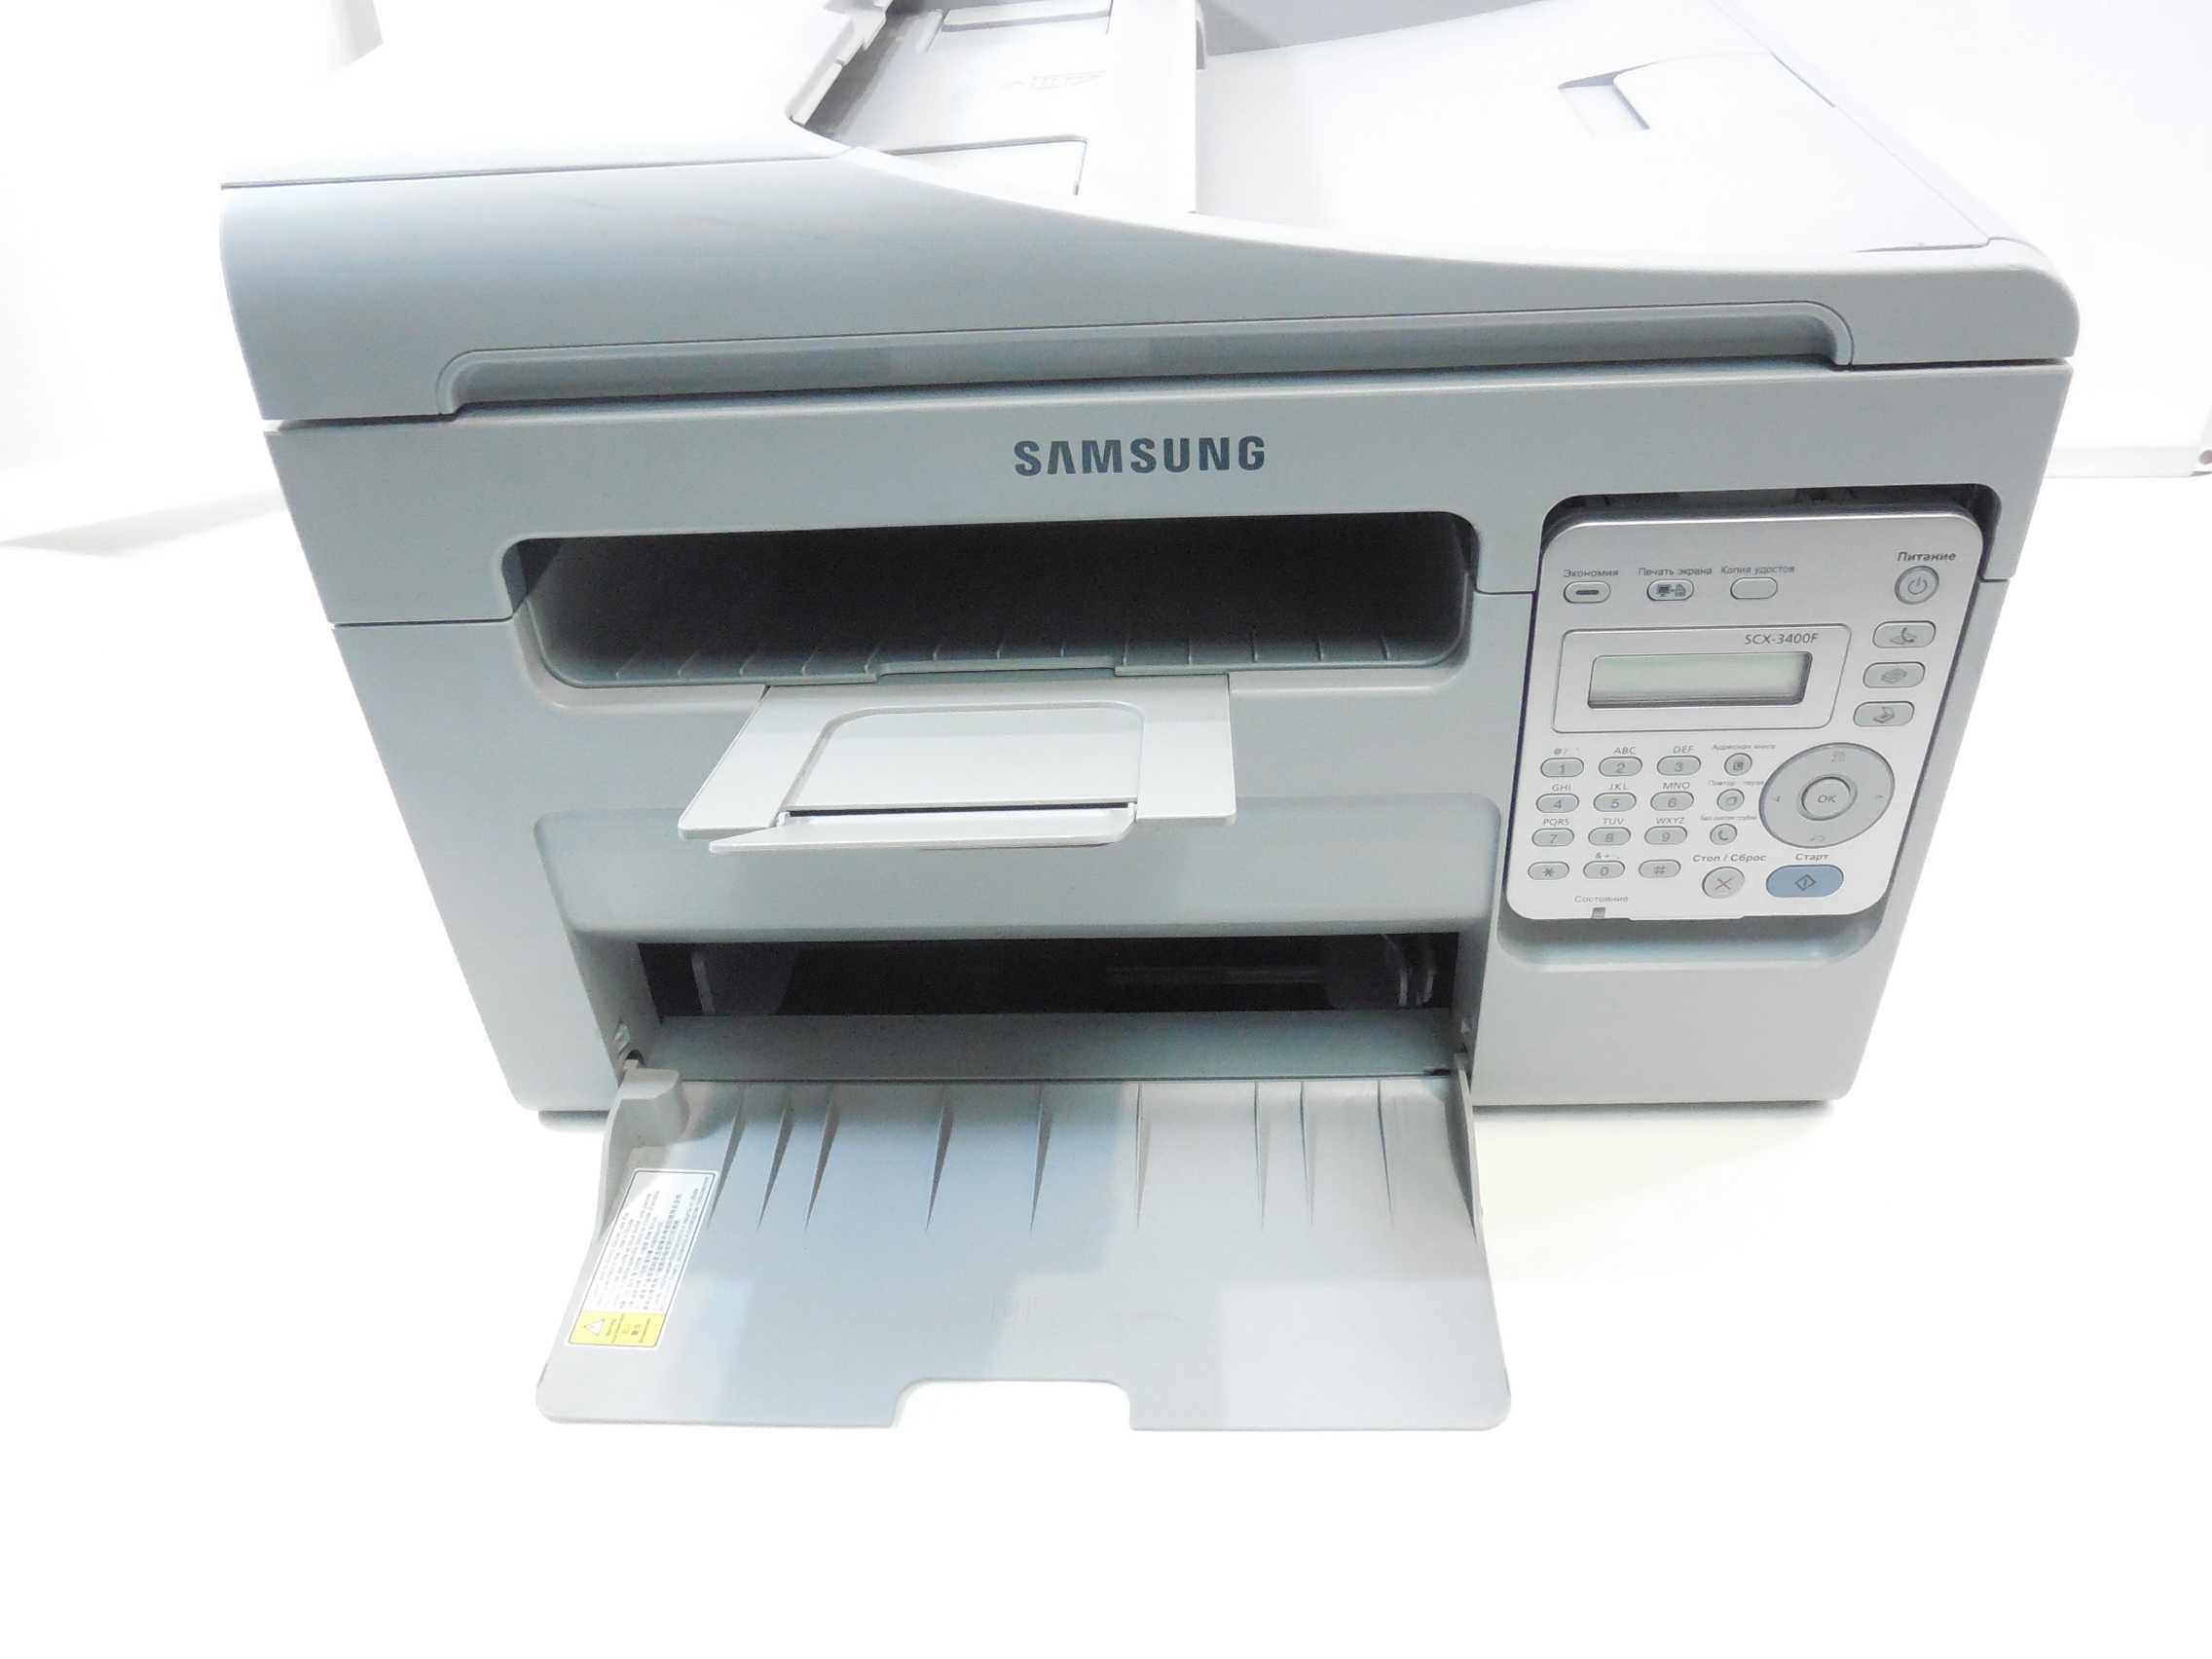 Scx 3400 принтер купить. МФУ Samsung SCX-3400. МФУ Samsung 3400. Самсунг принтер сканер копир SCX-3400. МФУ лазерный самсунг 3400.